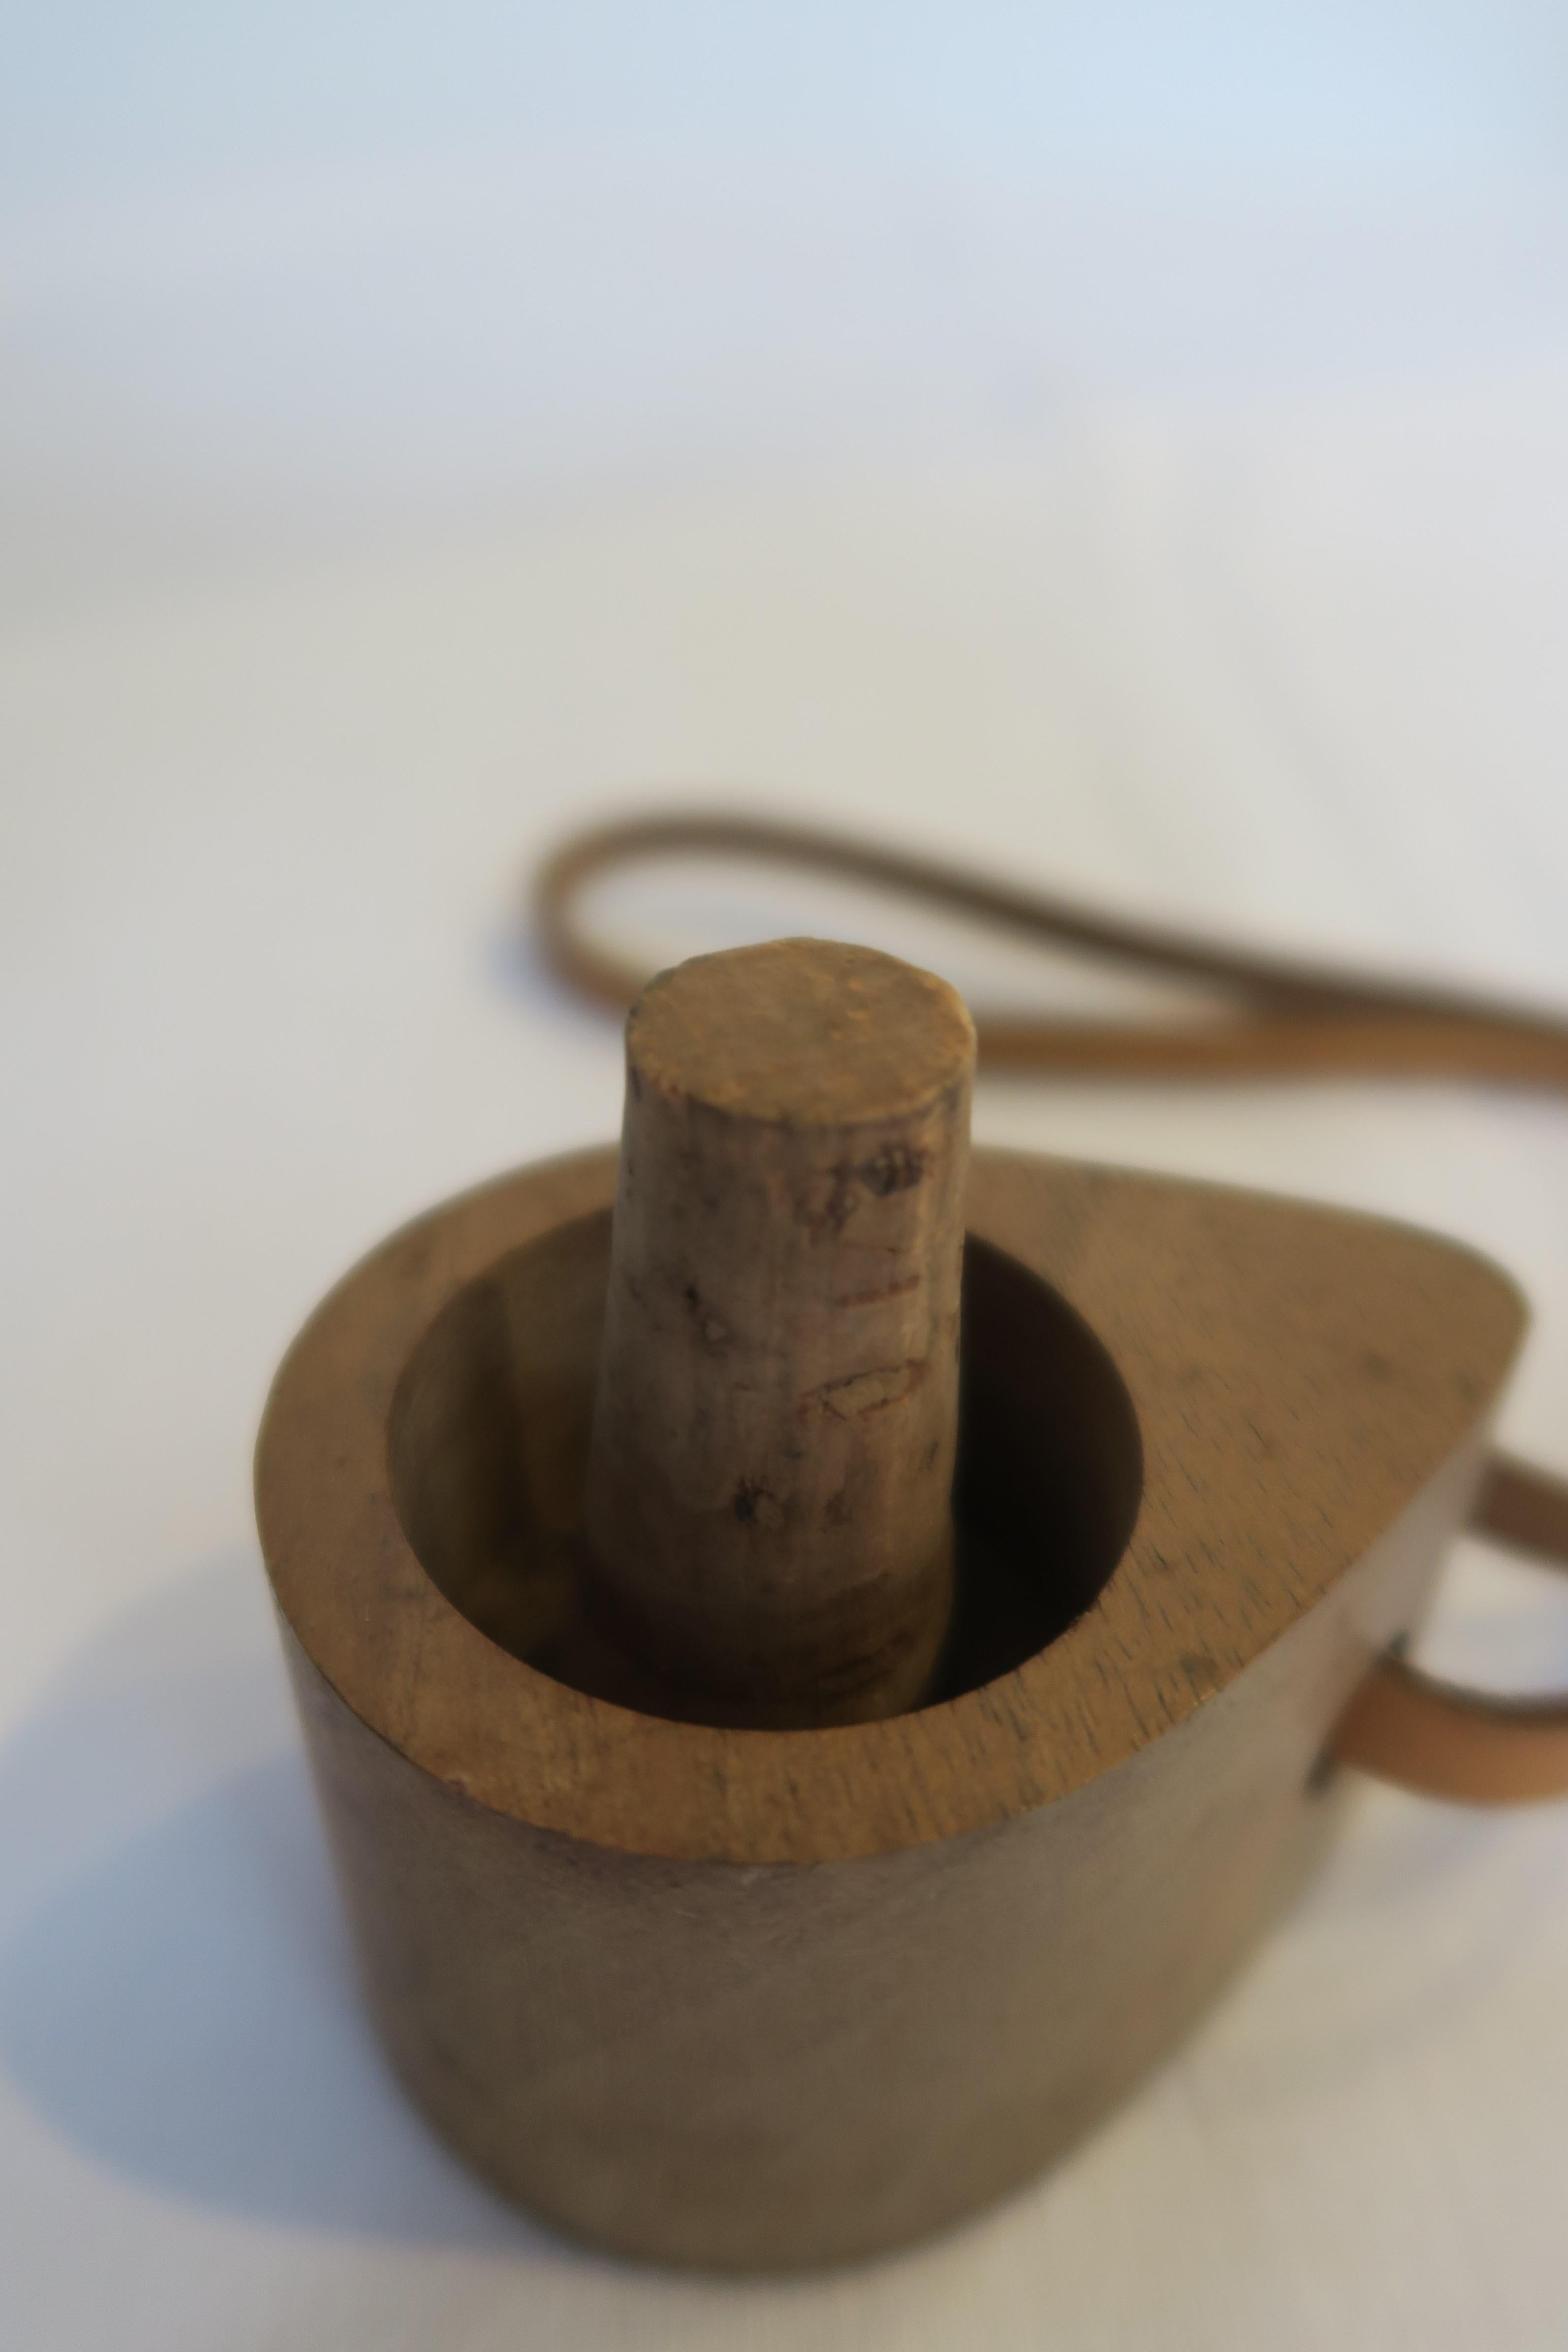 Austrian Mid-Century Wooden Bottle Stopper/Cork by Carl Auböck For Sale